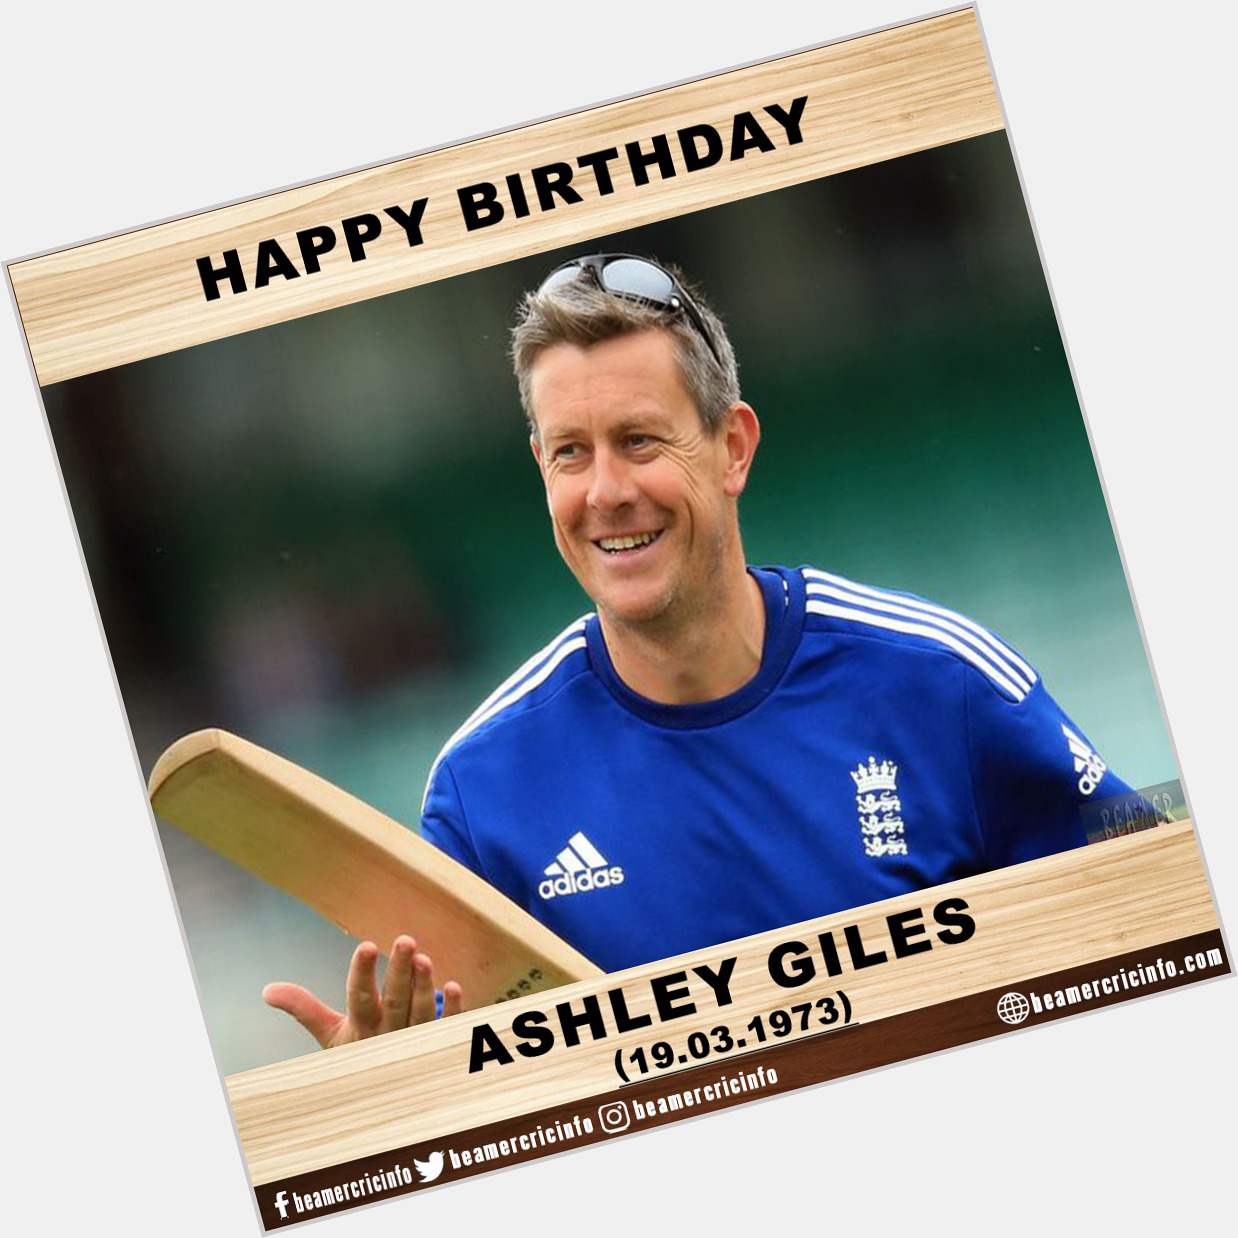 Happy Birthday!!!
Ashley Giles...      